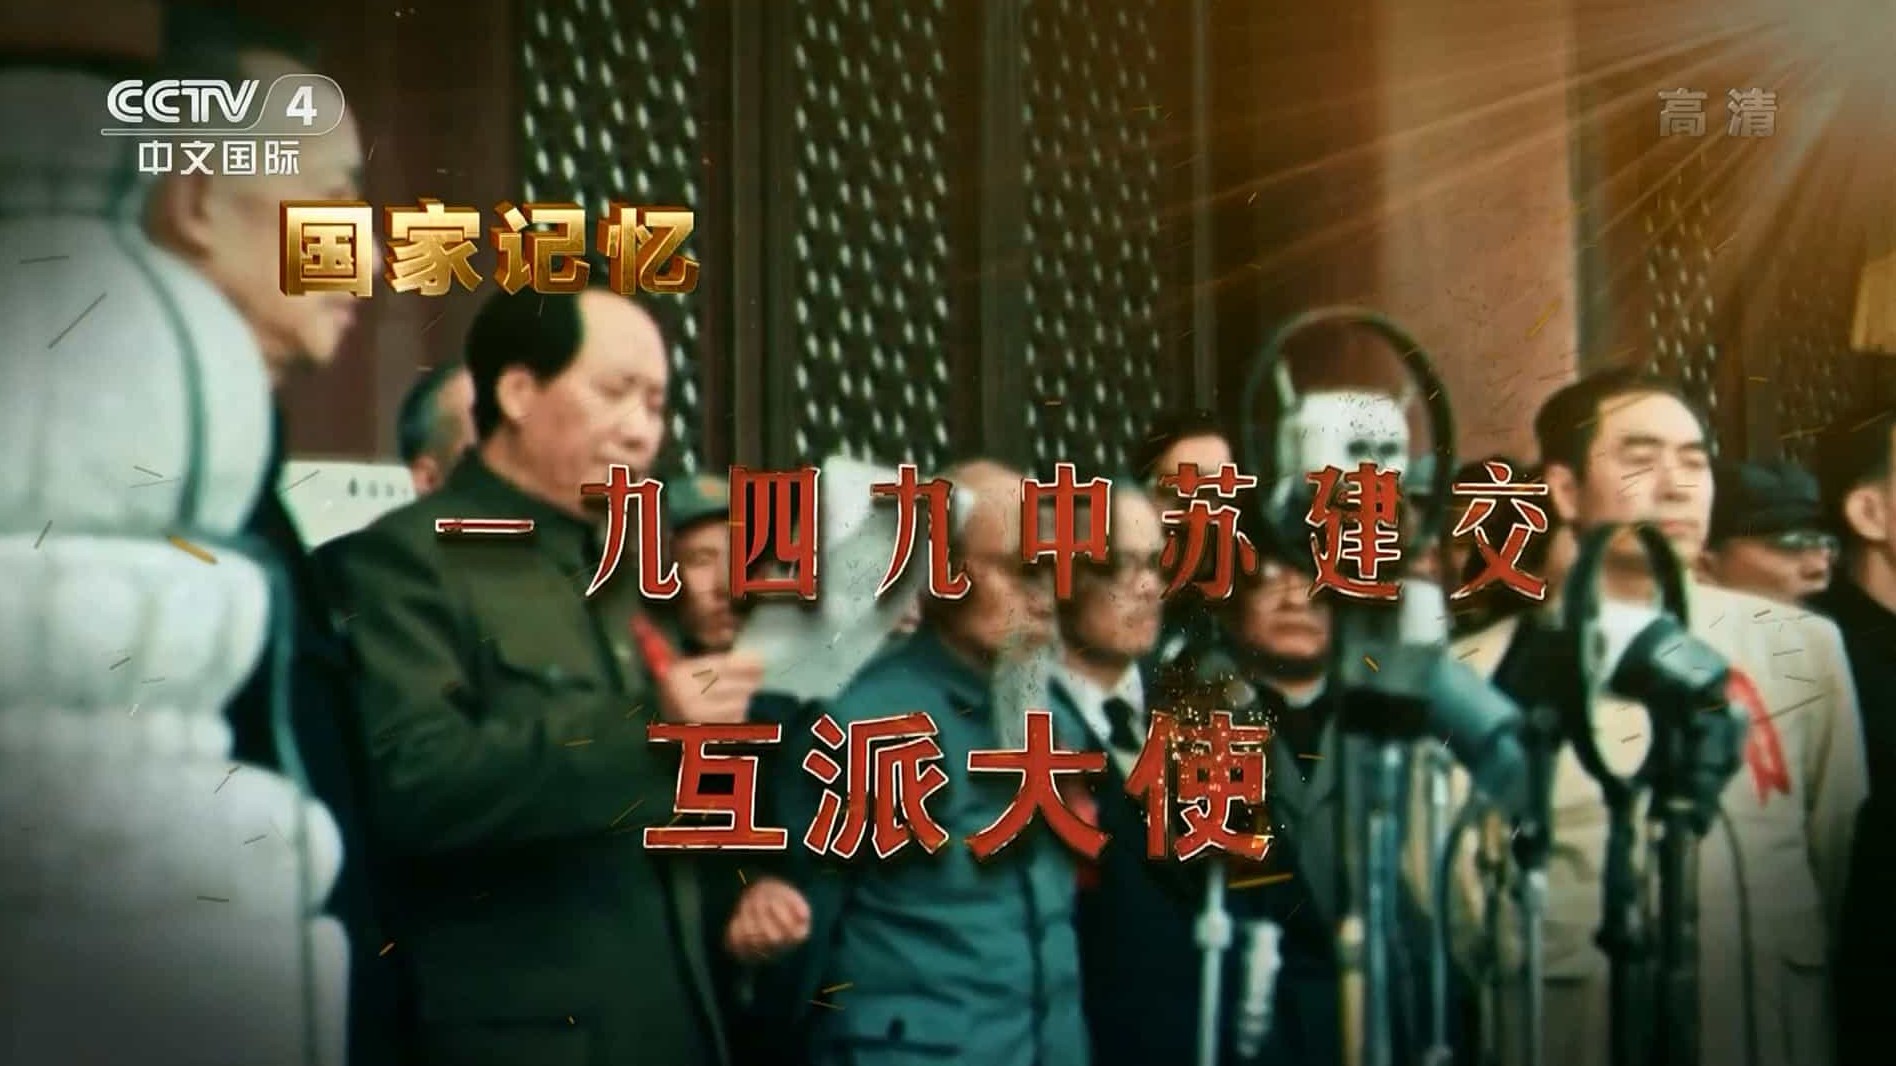 央视国家记忆系列《一九四九中苏建交 2021》汉语中字 1080i